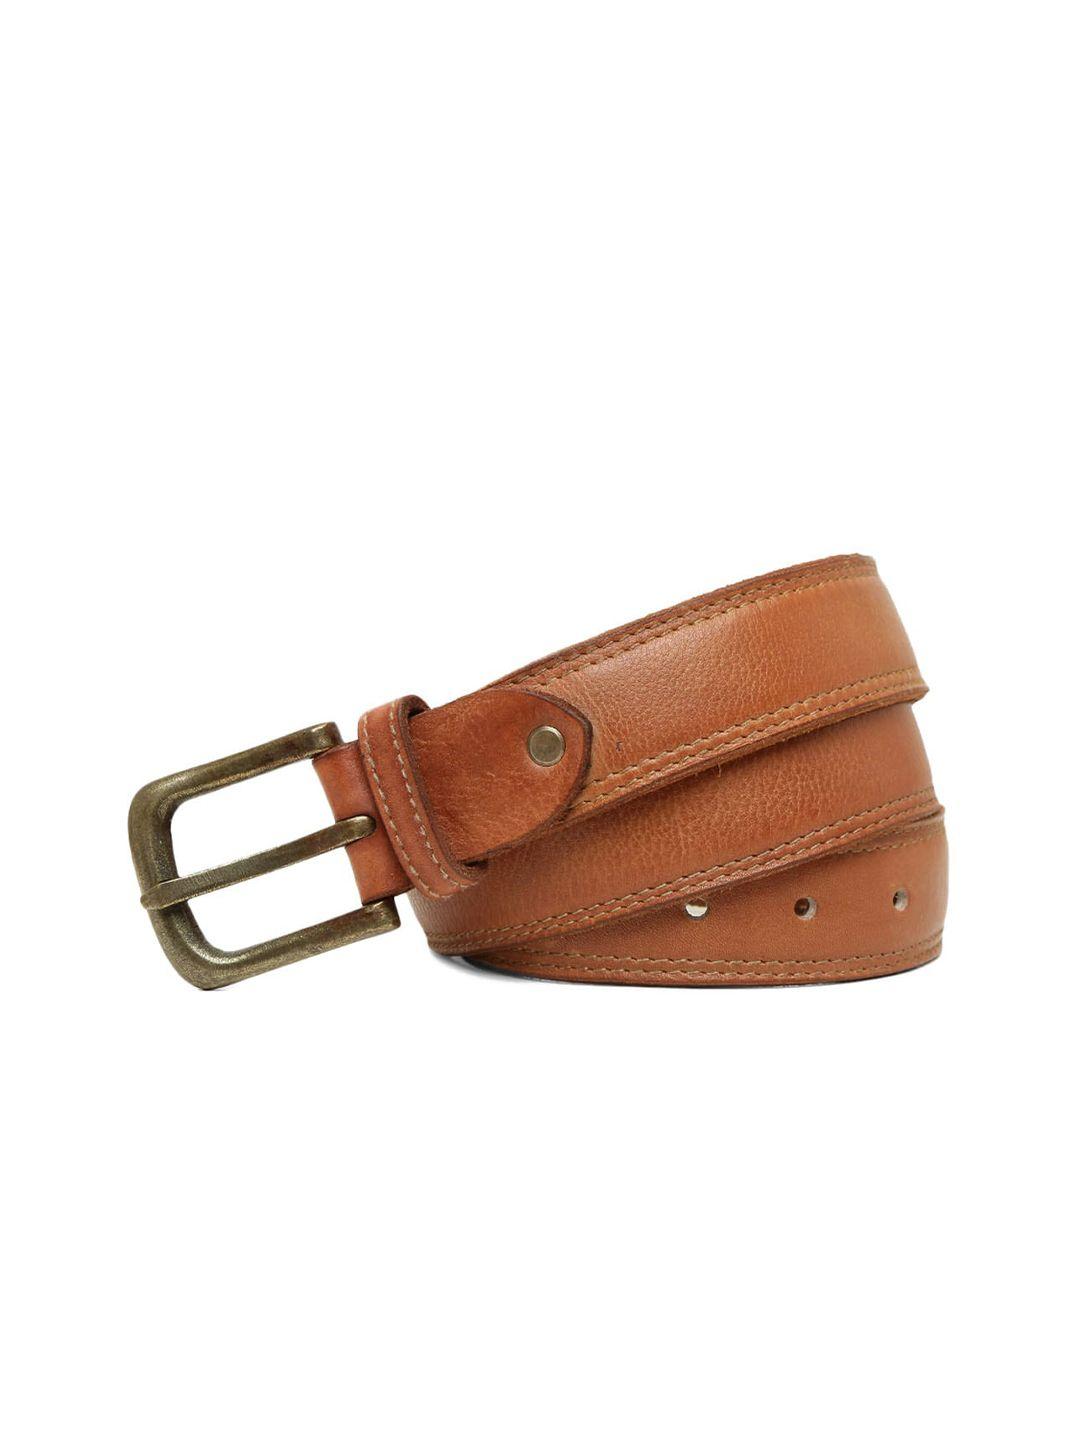 art n vintage men leather formal belt